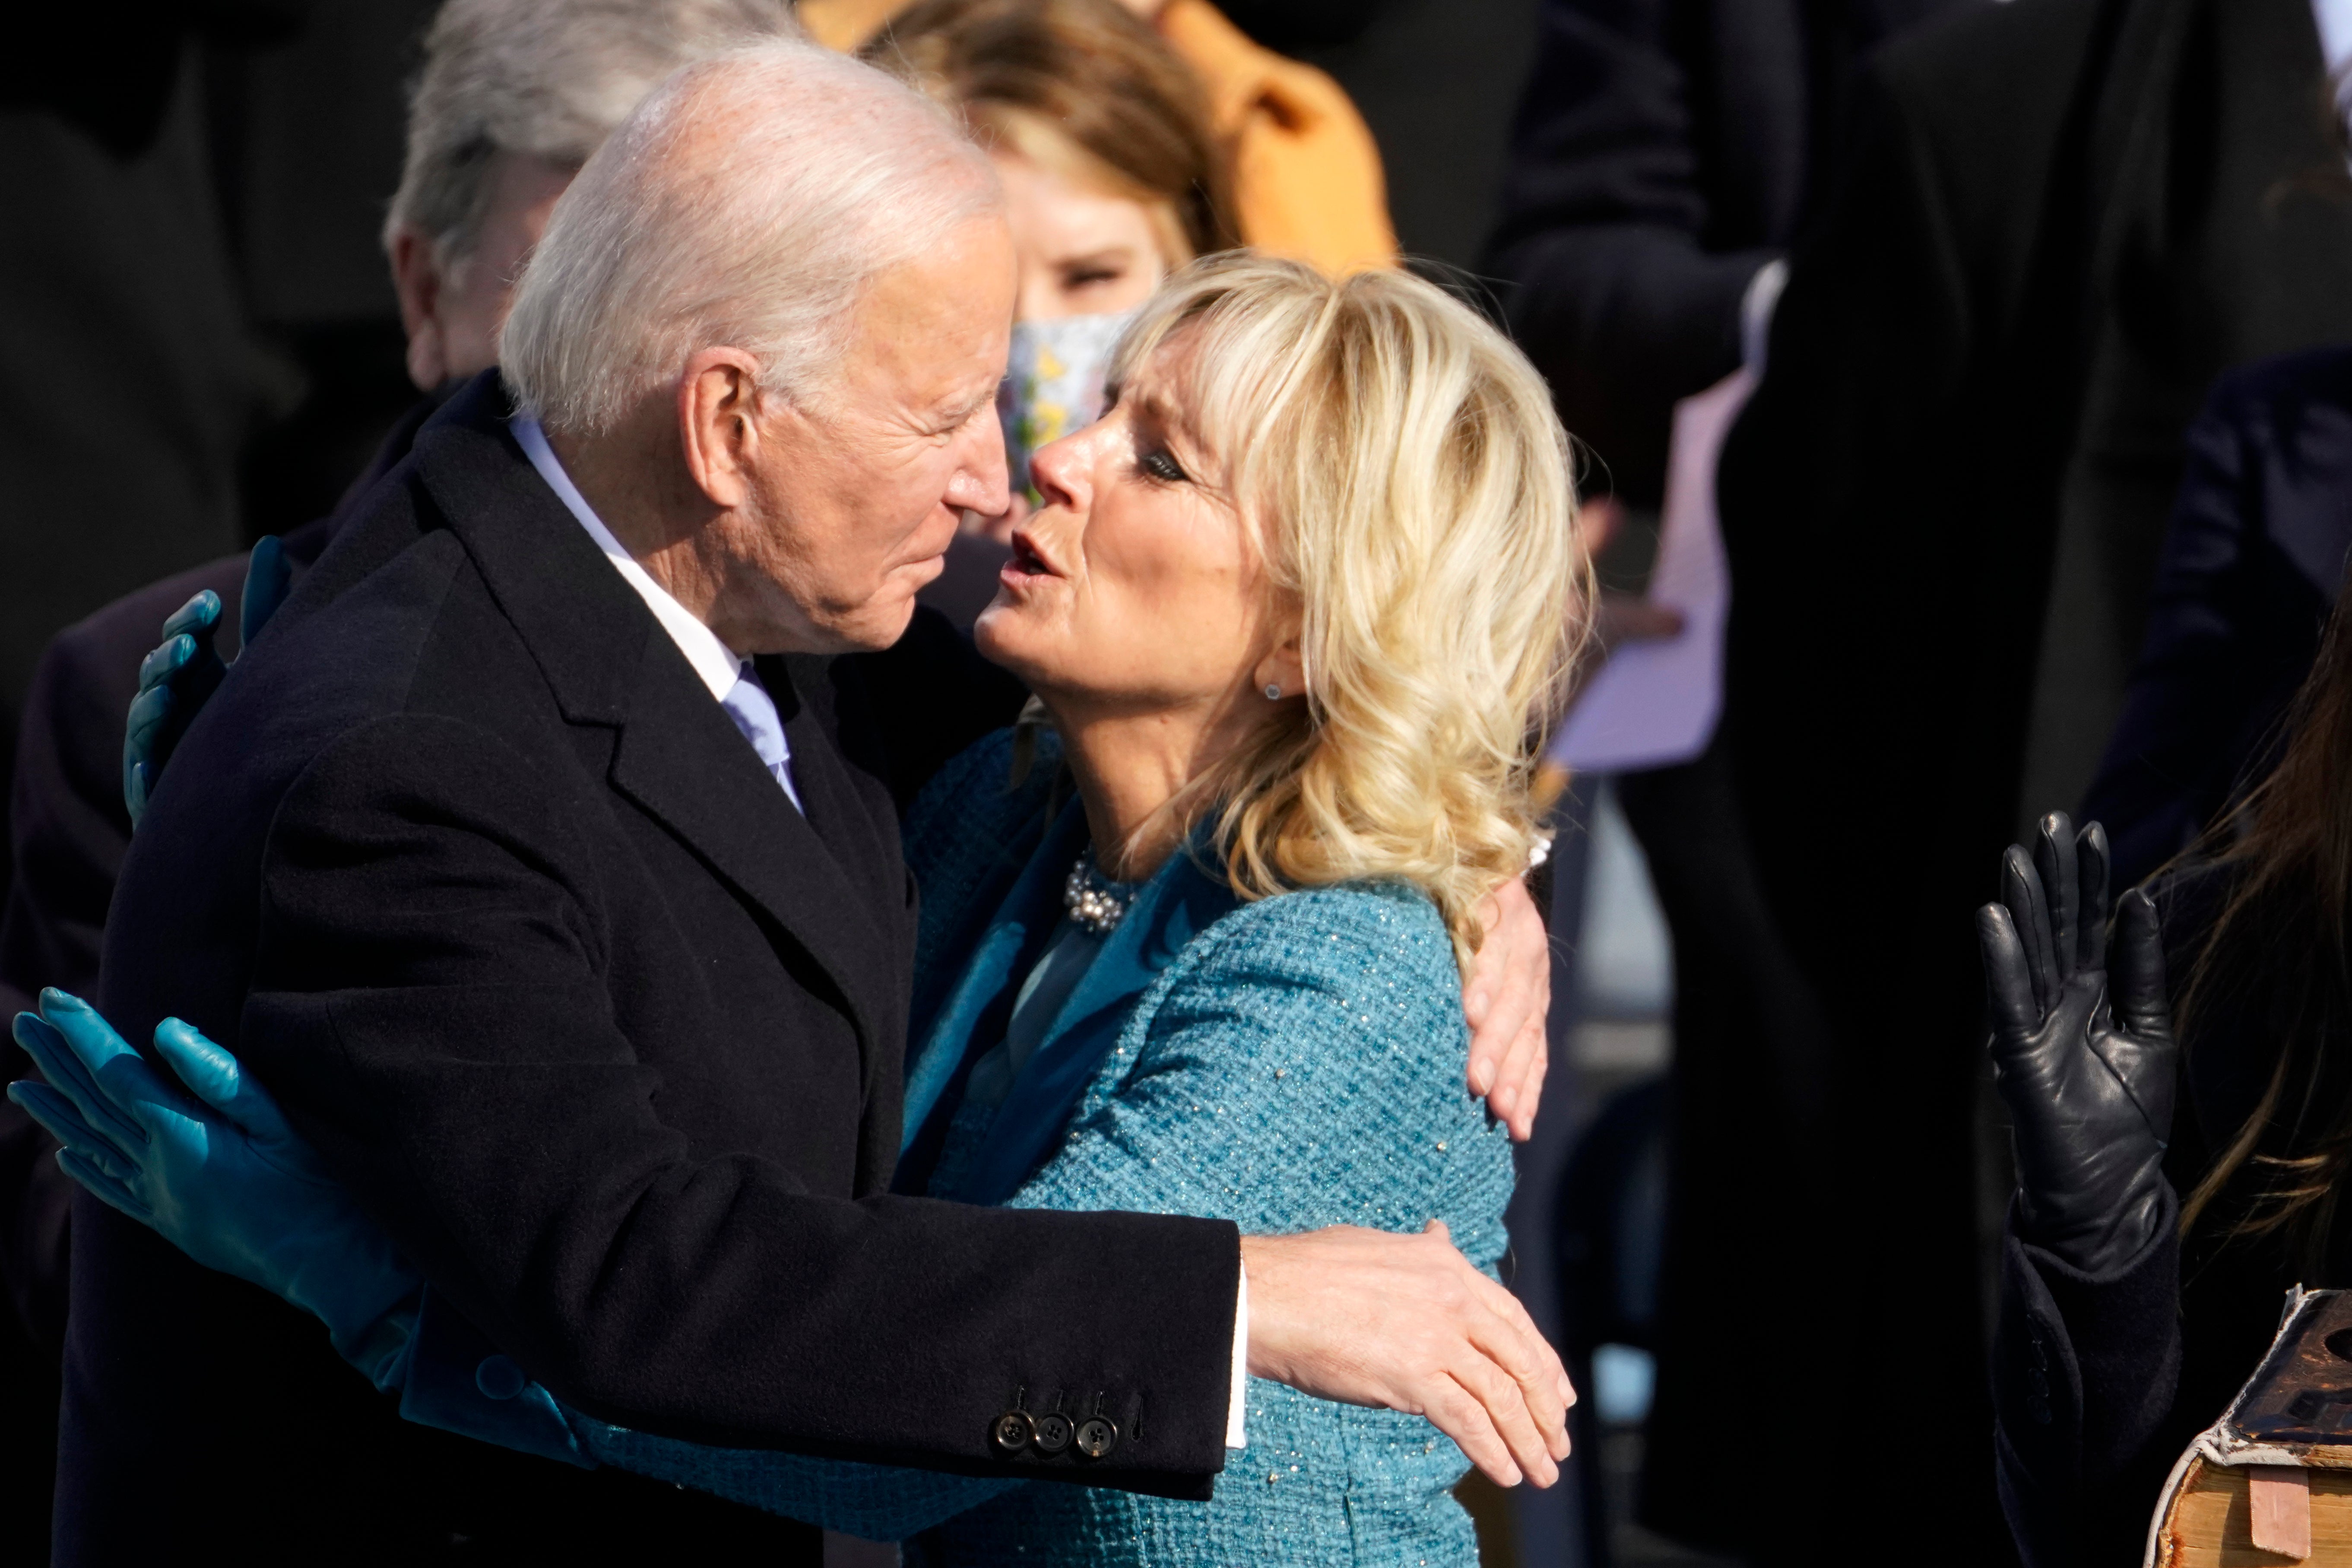 Joe Biden is embraced by first lady Jill Biden after being sworn in as president